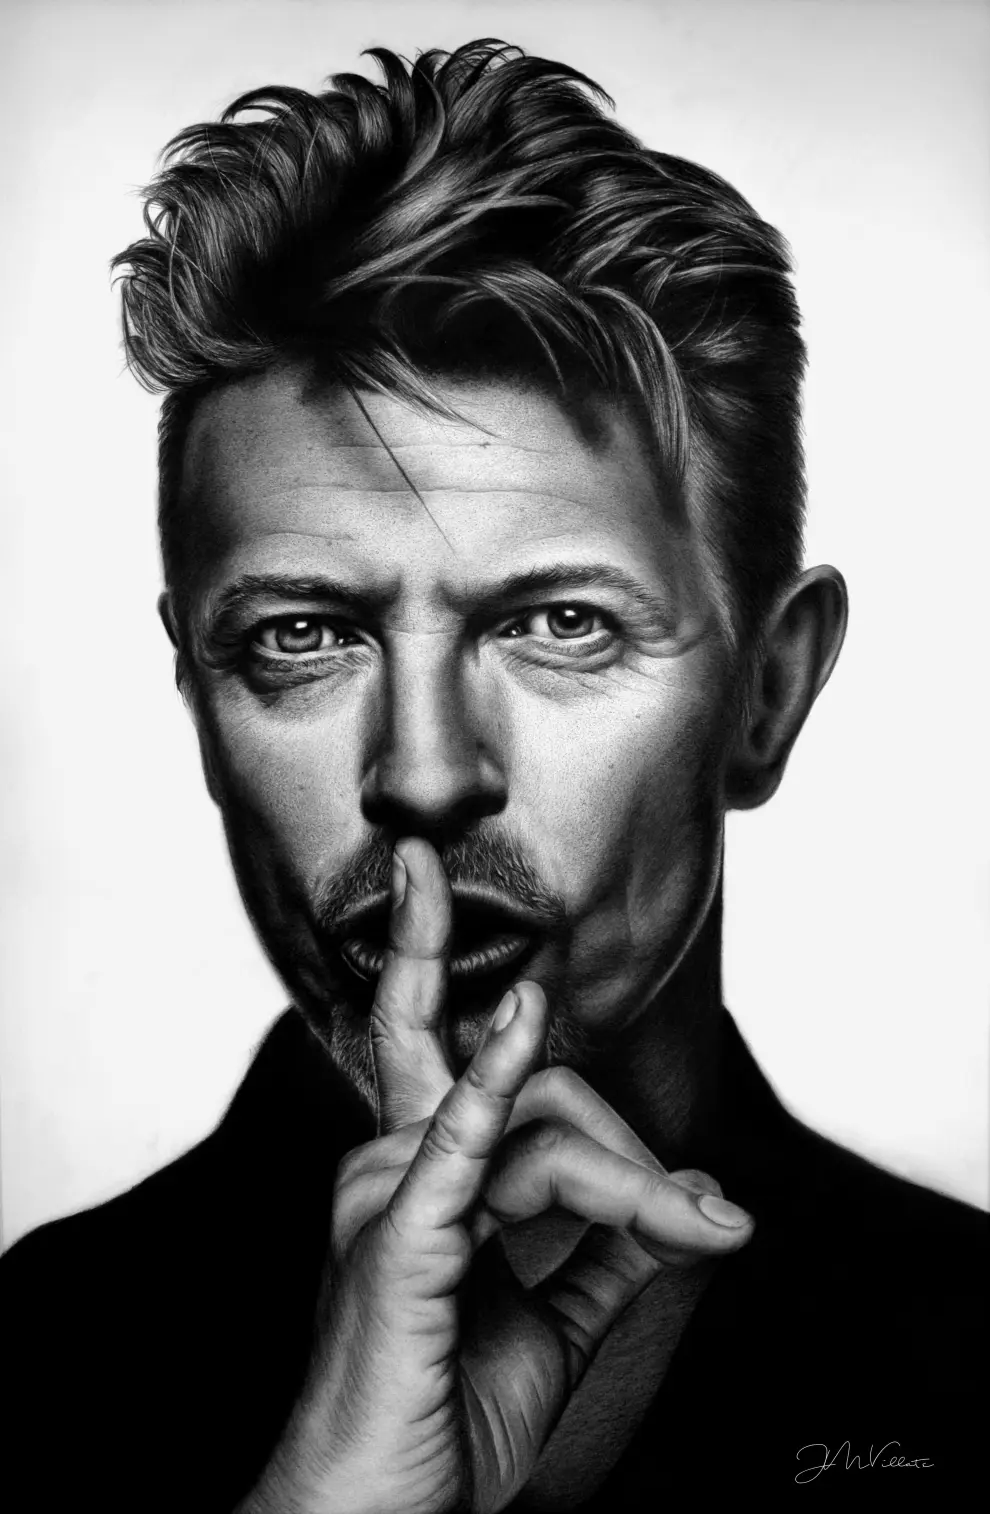 David Bowie, por Juan Martín Villate, pintor hiperrealista zaragozano